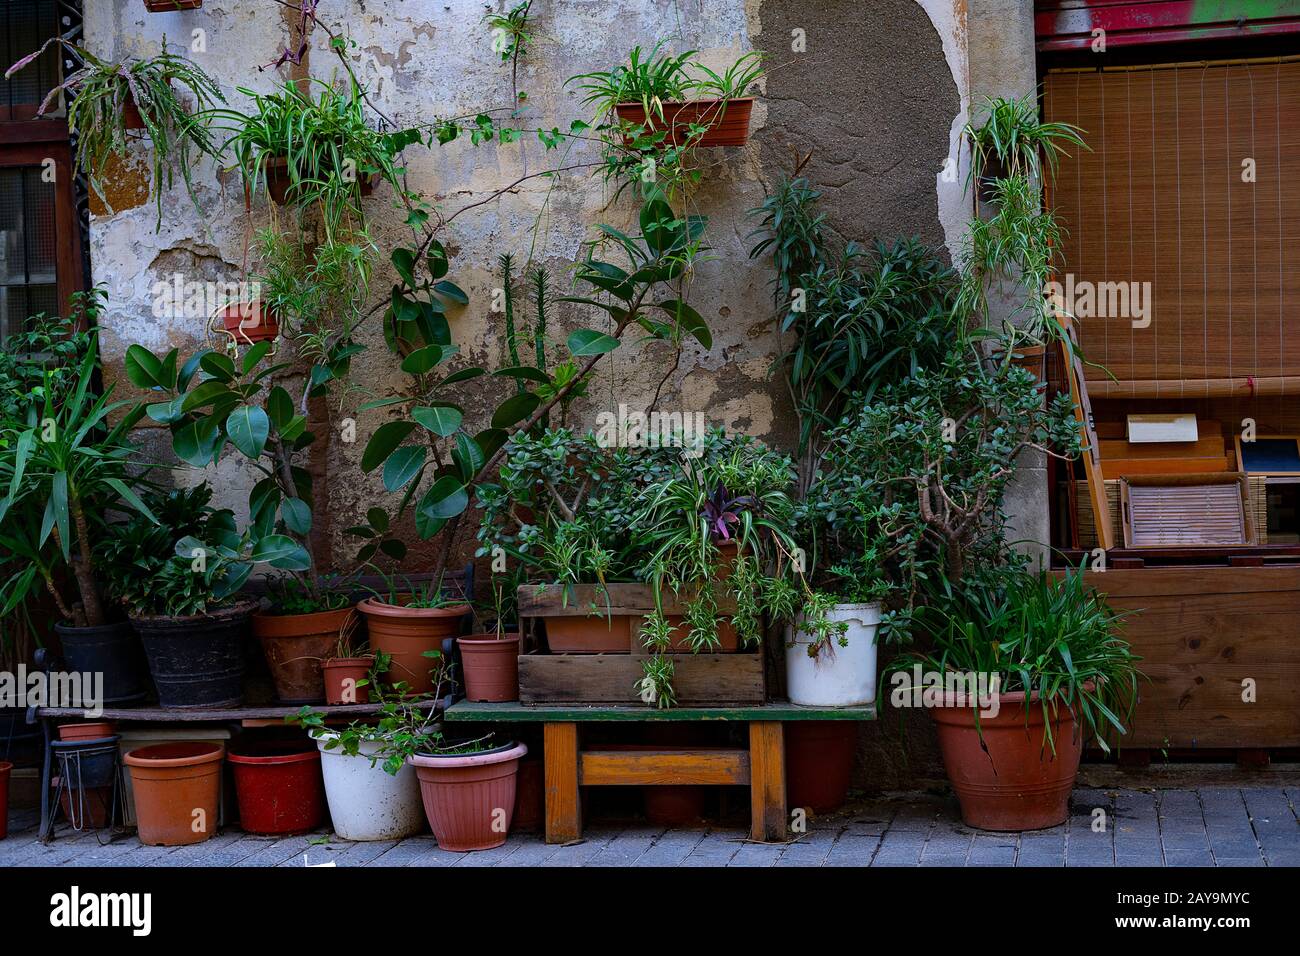 Fassade eines Hauses voller Pflanzen und Blumen. Gartenkonzept für den Hausbau. Stockfoto